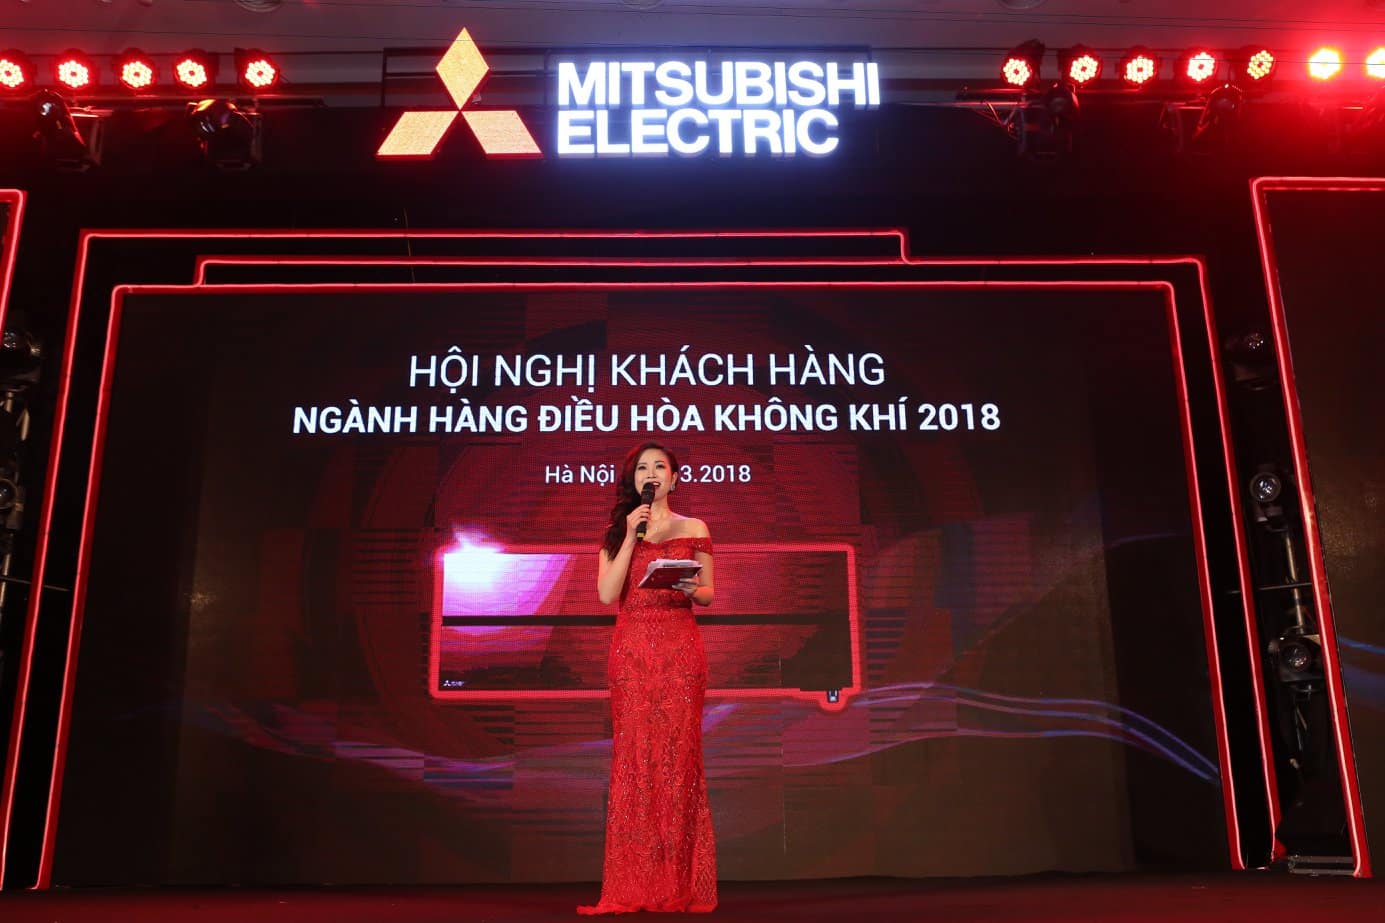 Hội nghị khách hàng Mitsubishi Electric